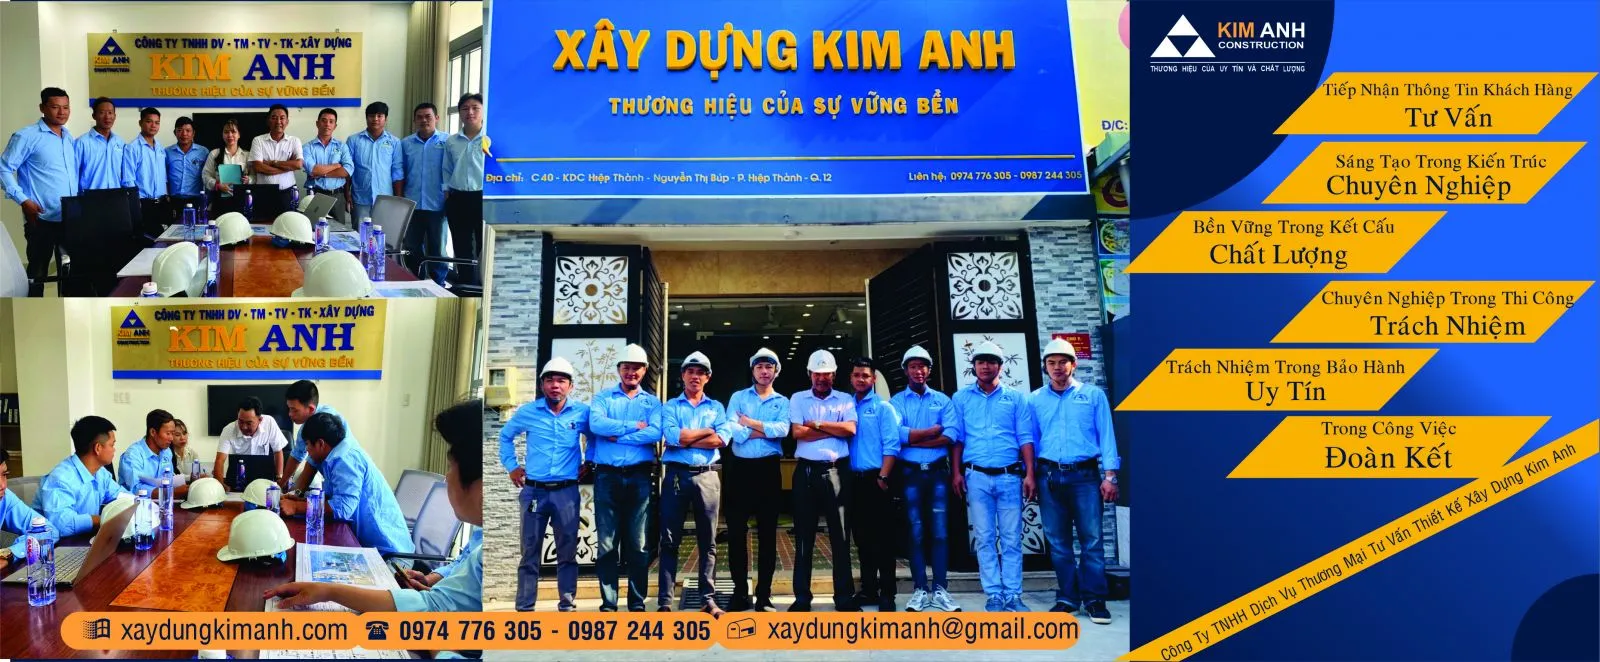 Xây Dựng Kim Anh: Công ty xây dựng nhà uy tín Quận 7